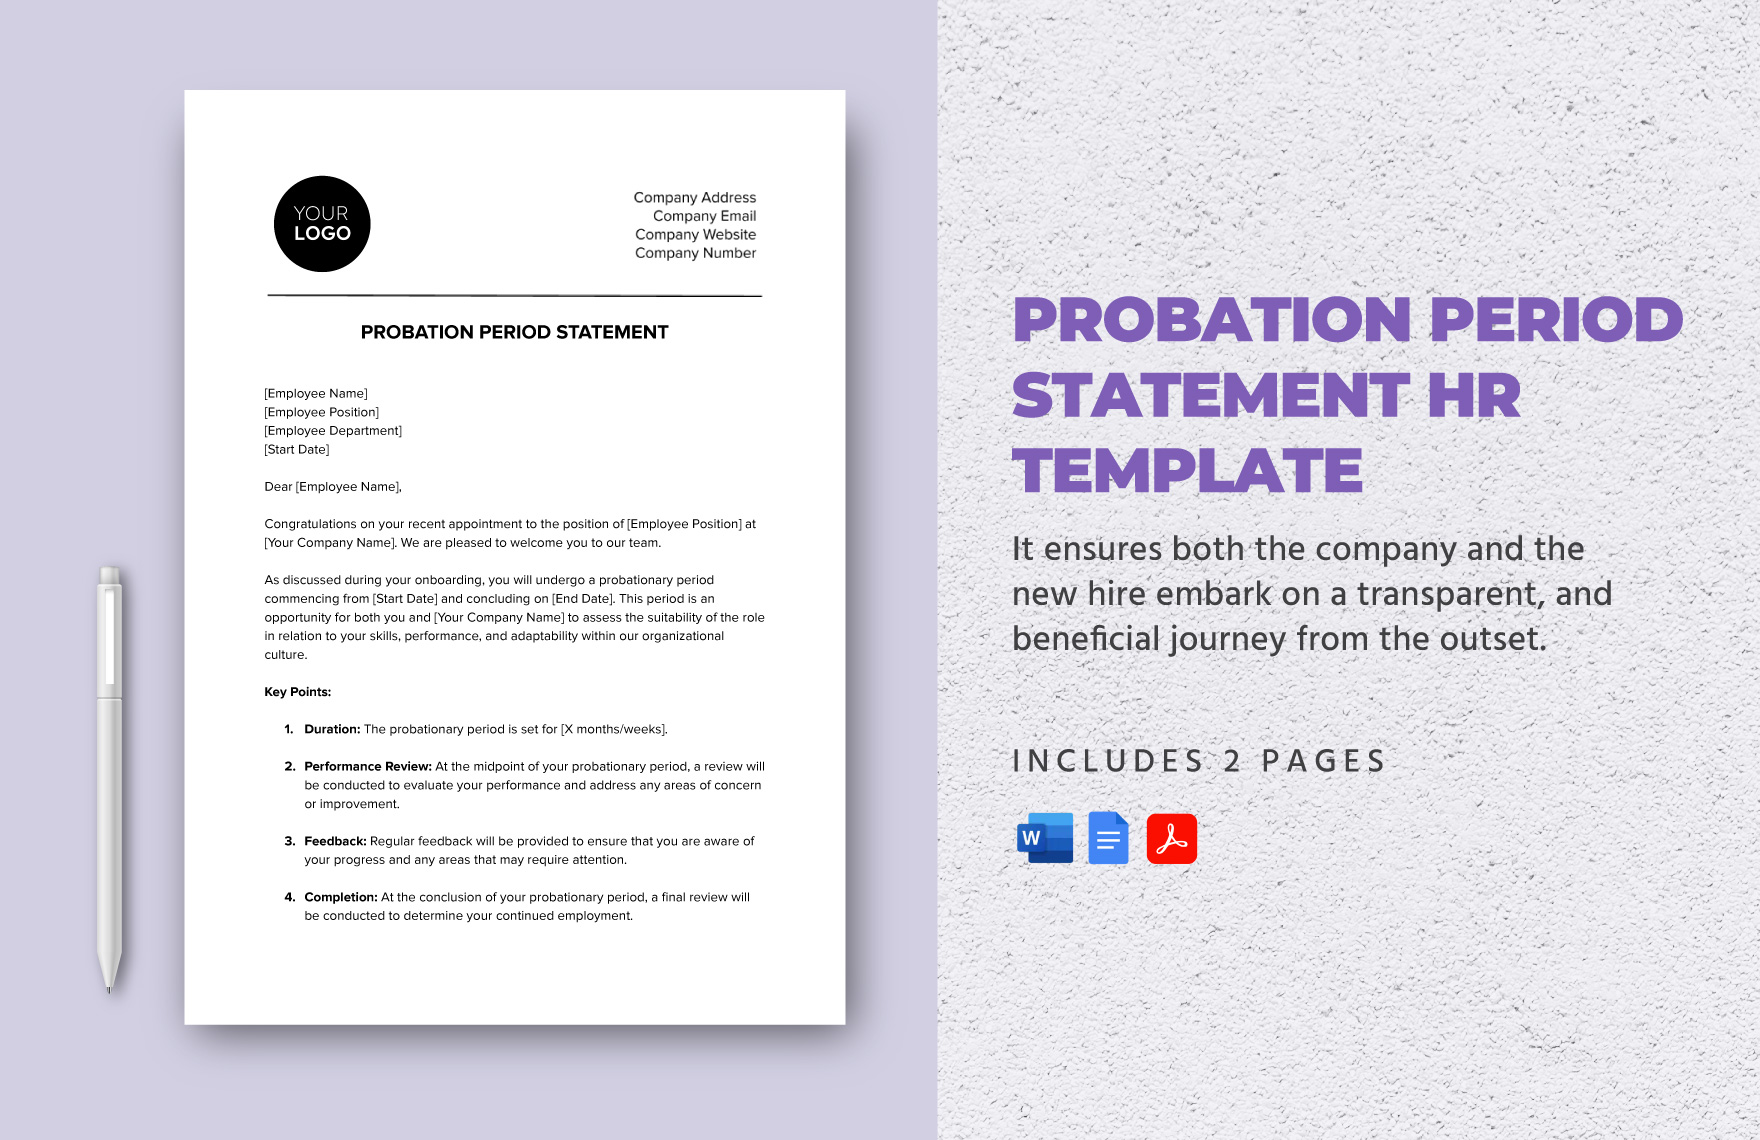 Probation Period Statement HR Template